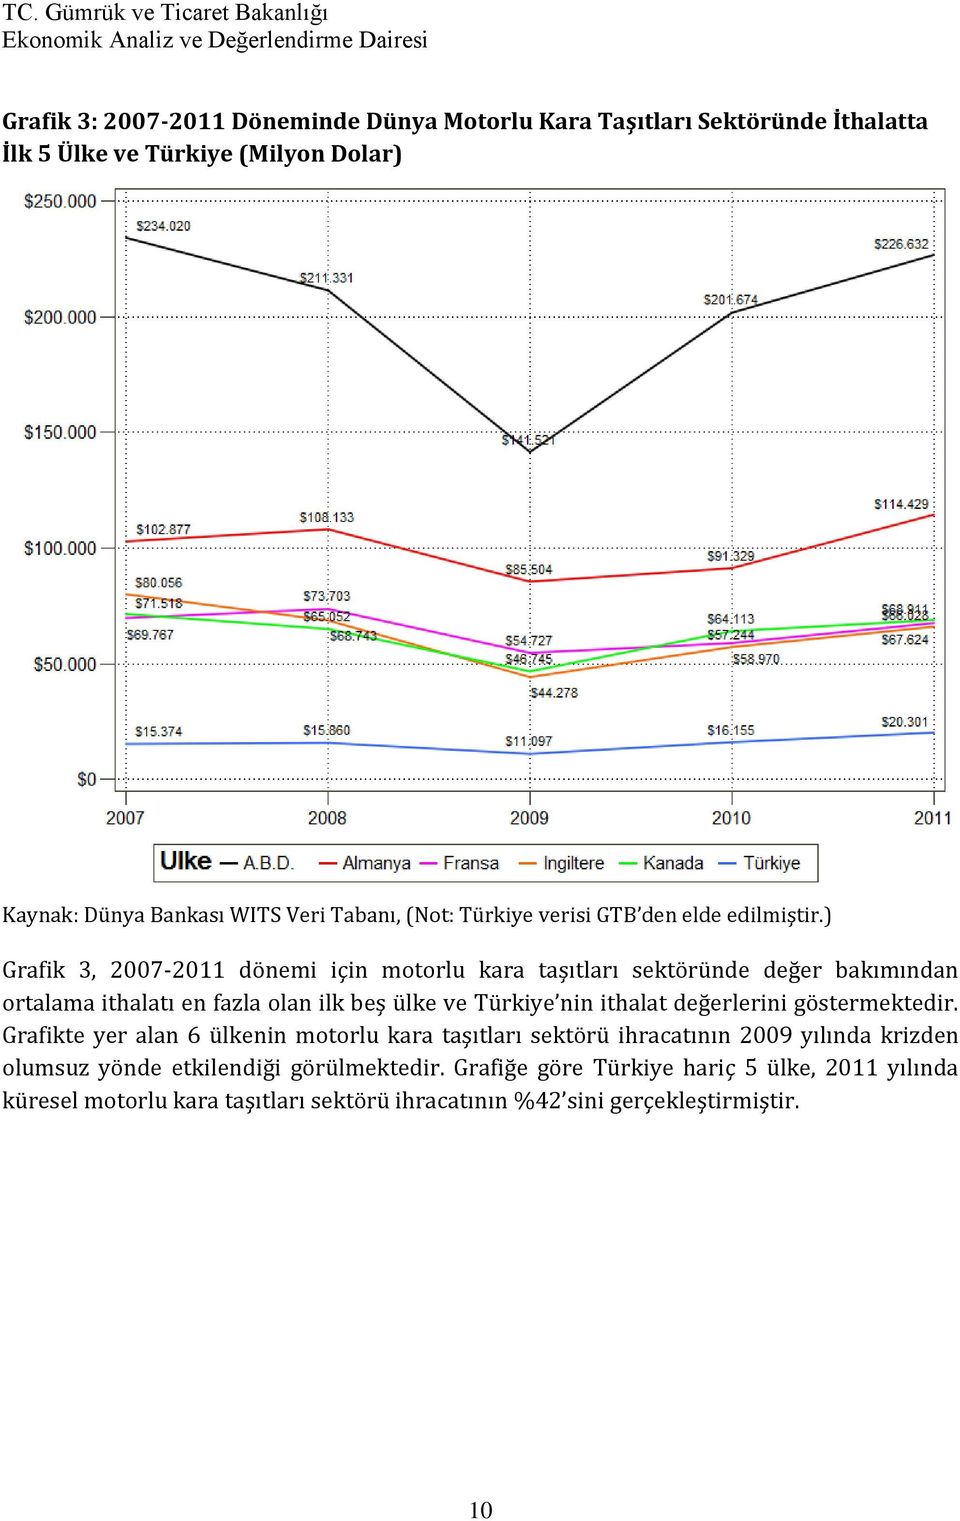 ) Grafik 3, 2007-2011 dönemi için motorlu kara taşıtları sektöründe değer bakımından ortalama ithalatı en fazla olan ilk beş ülke ve Türkiye nin ithalat